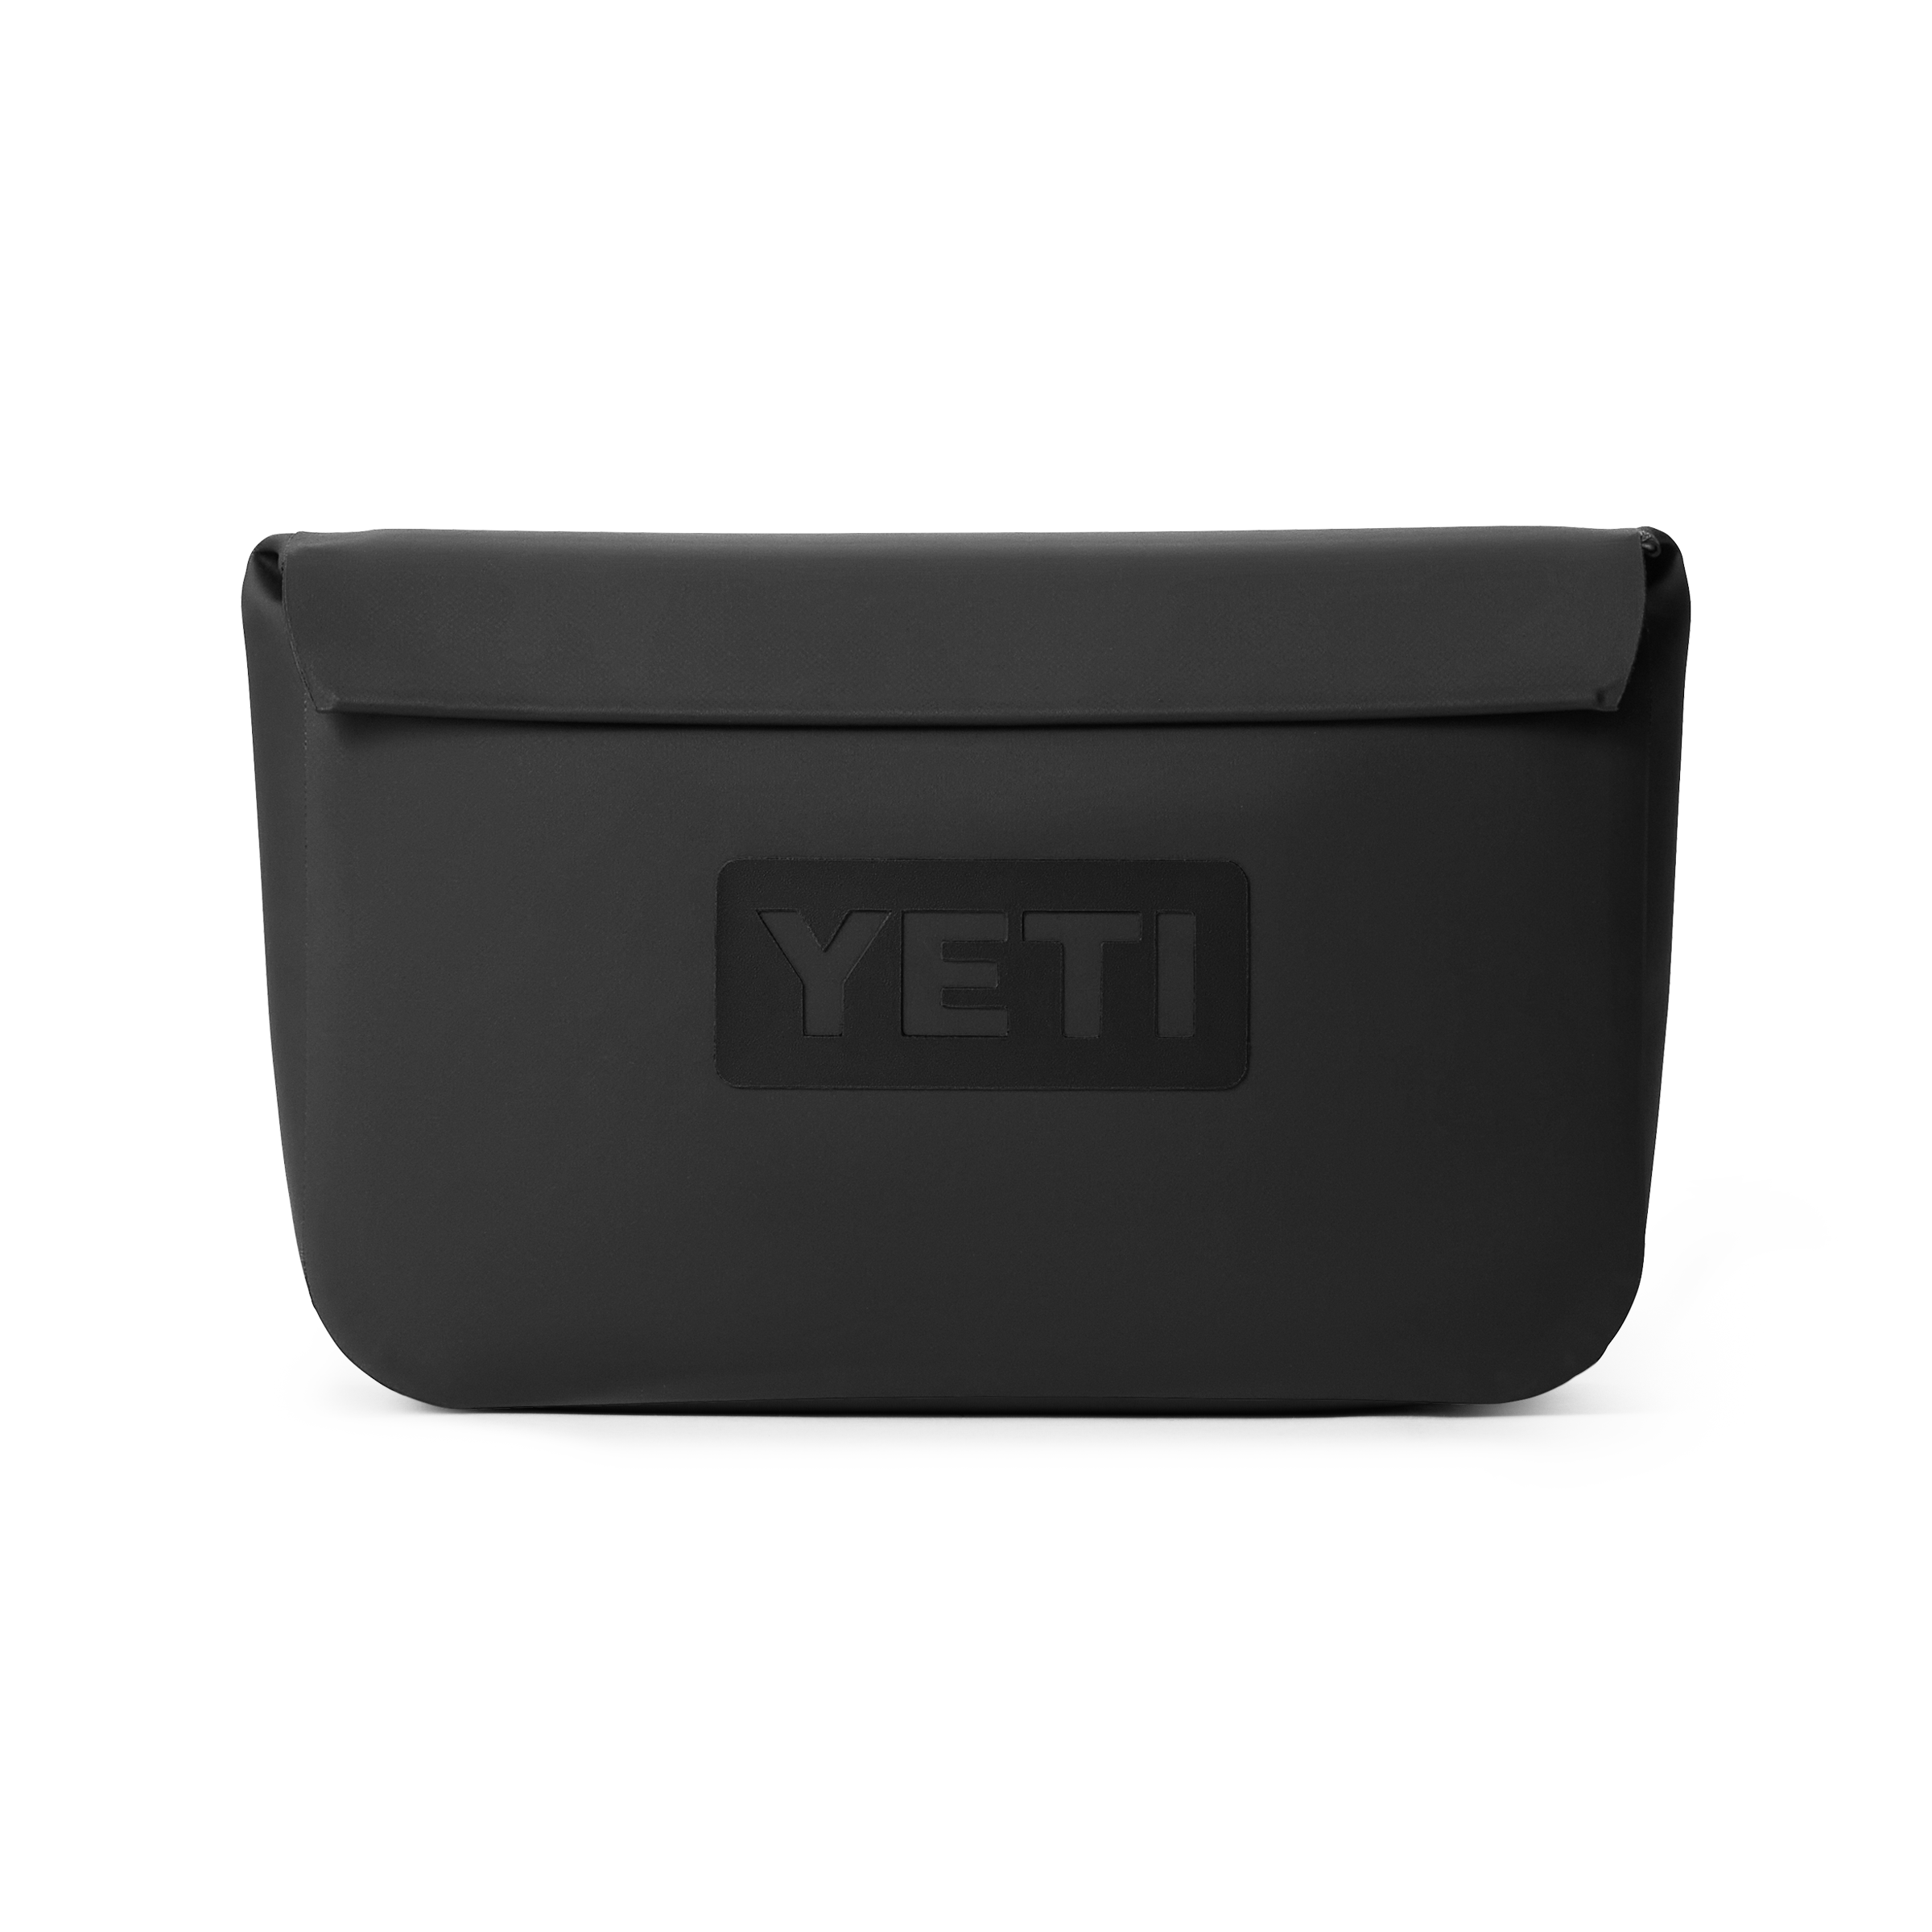 Used Yeti Sidekick Dry Waterproof Gear Case